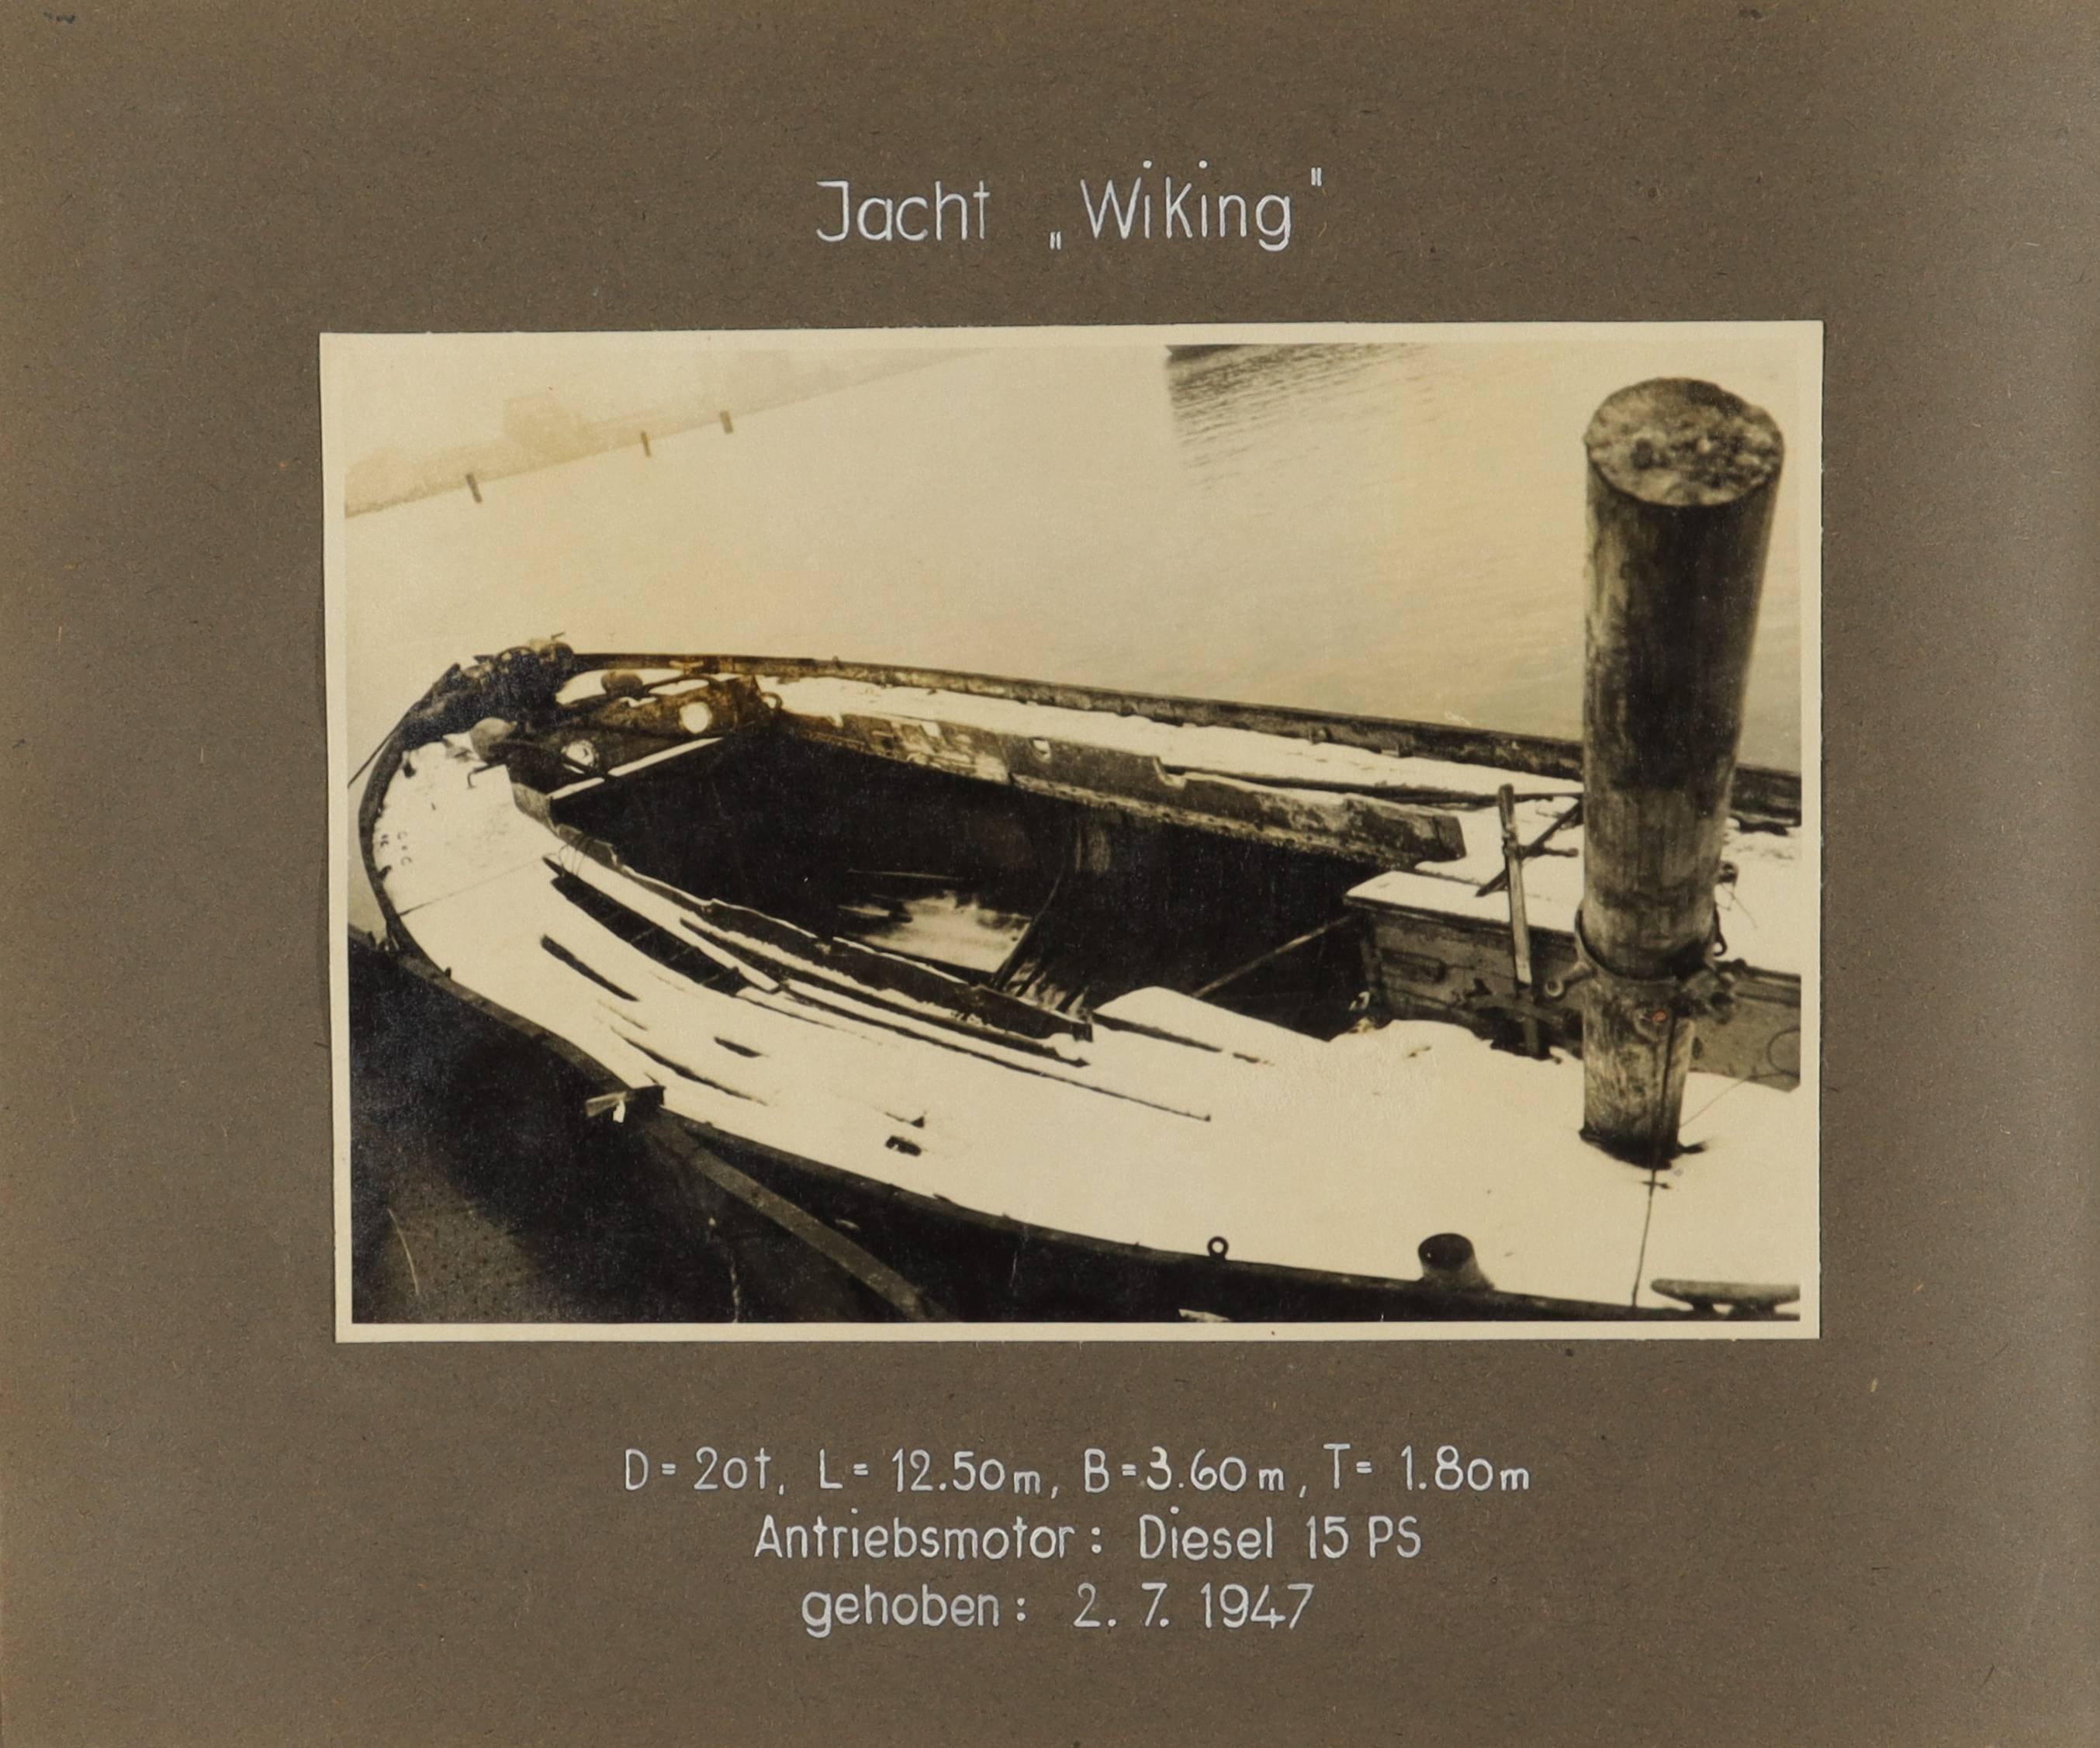 Schiffswrack der Jacht "Wiking" (Schiffbau- und Schiffahrtsmuseum Rostock RR-F)